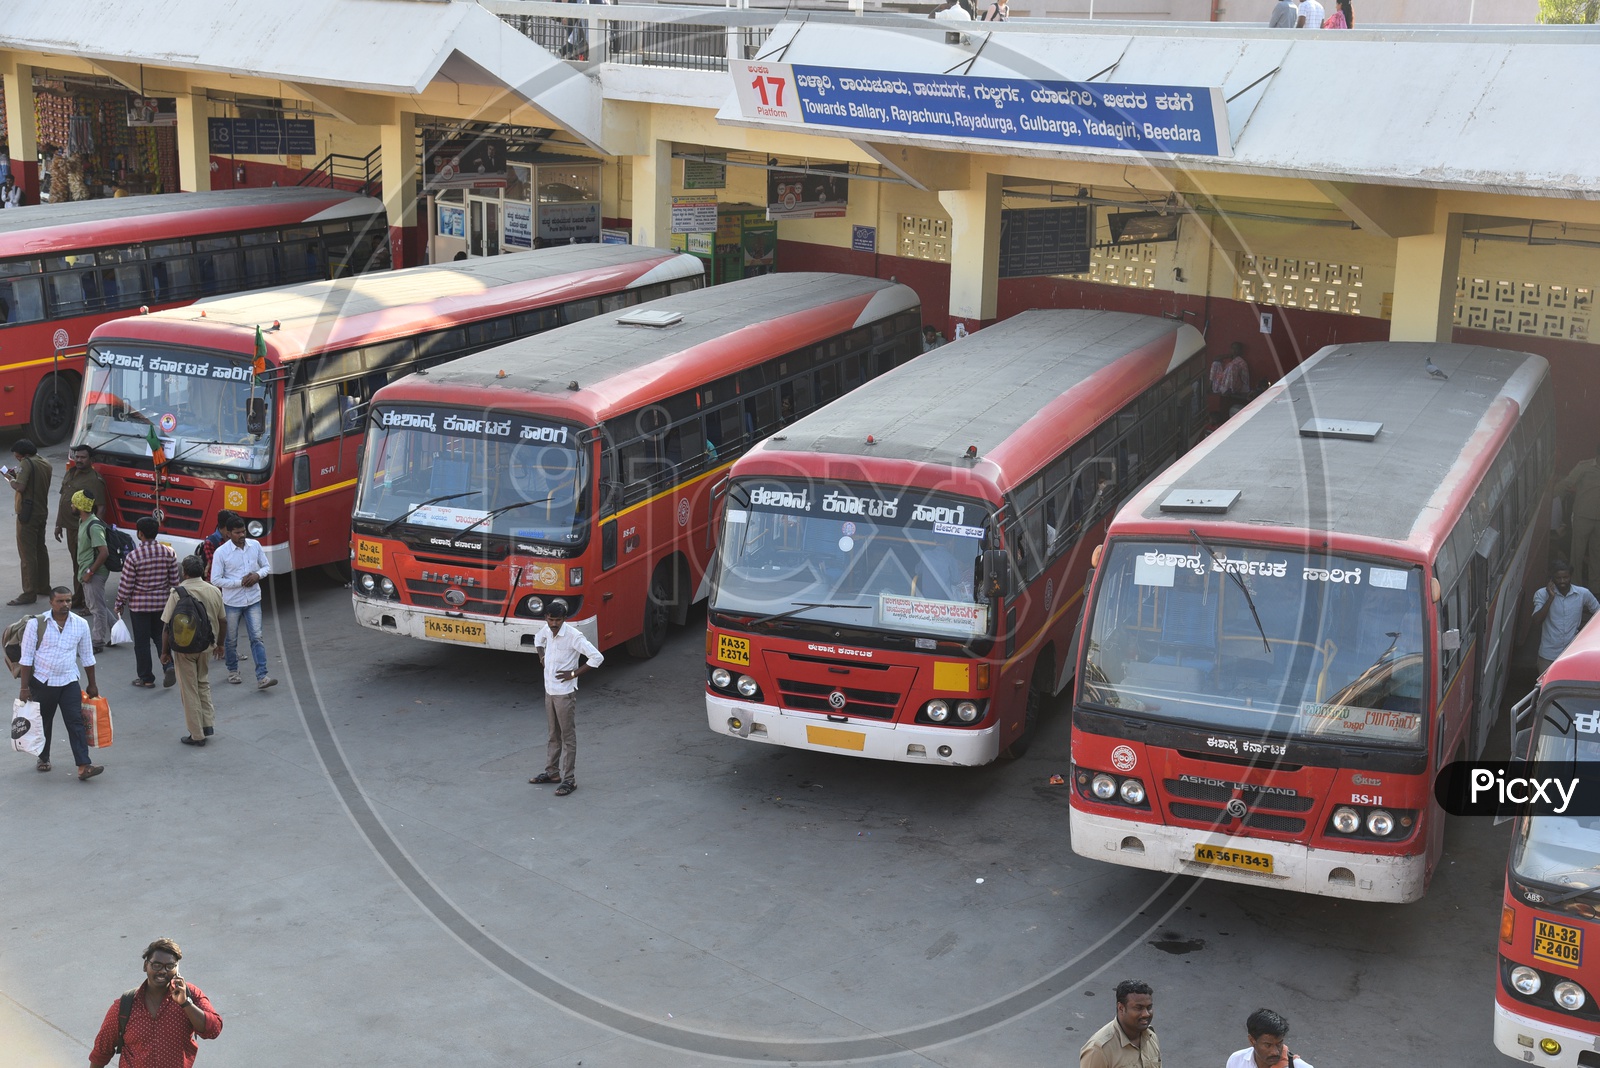 NEKRTC buses at platform 17 in Kempegowda bus station, Bangalore